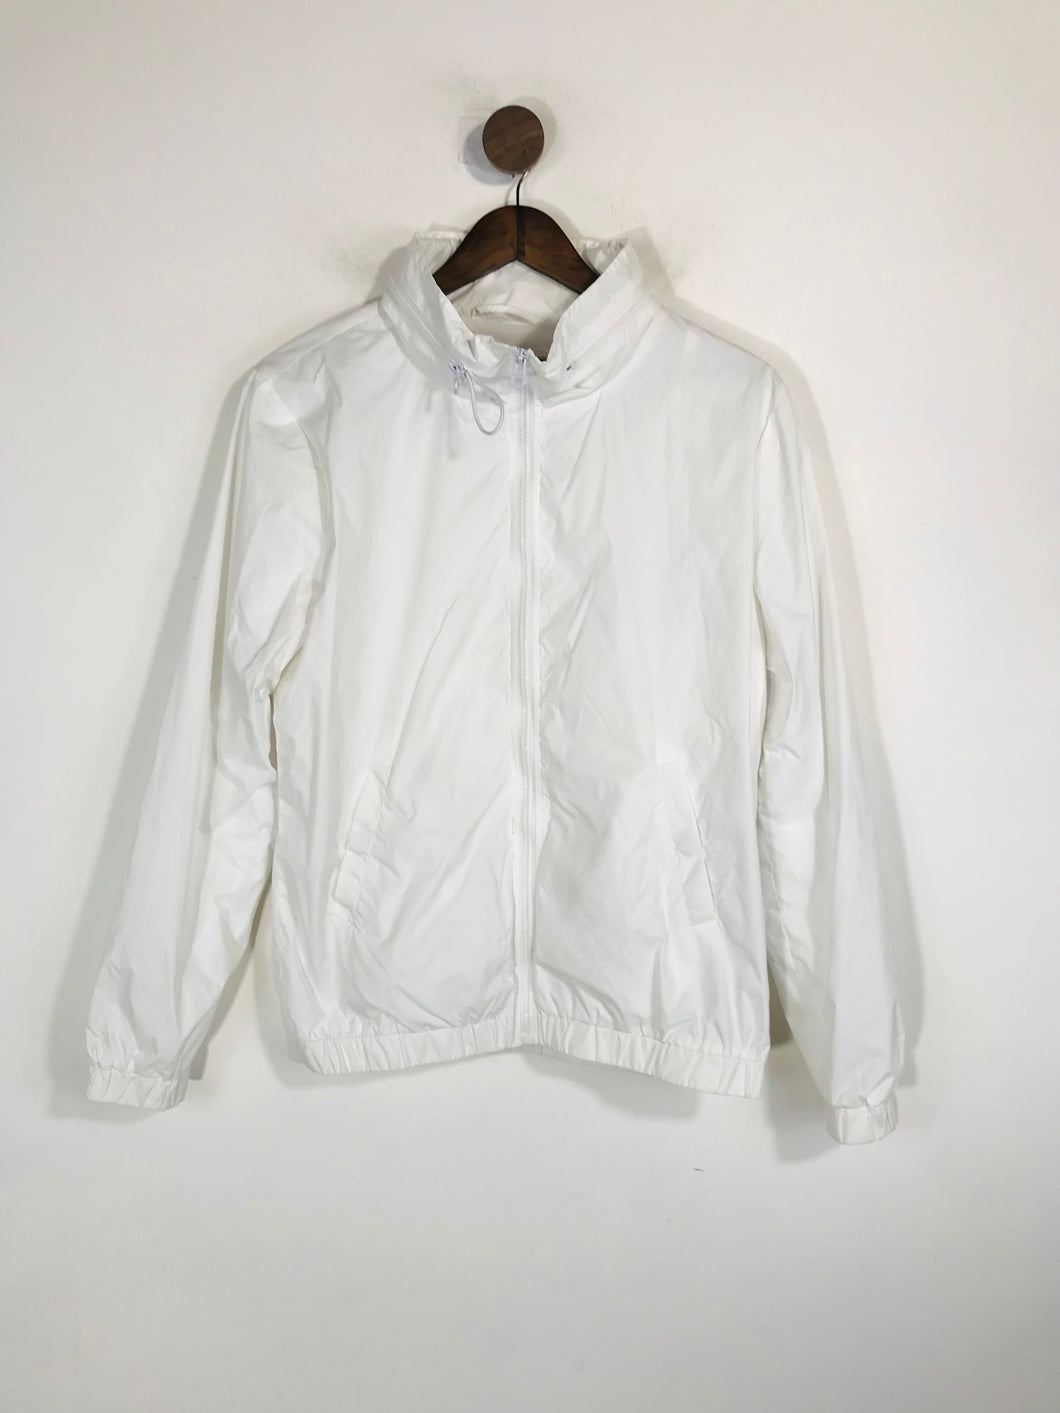 Retro Women's Vintage Raincoat Jacket | M UK10-12 | White